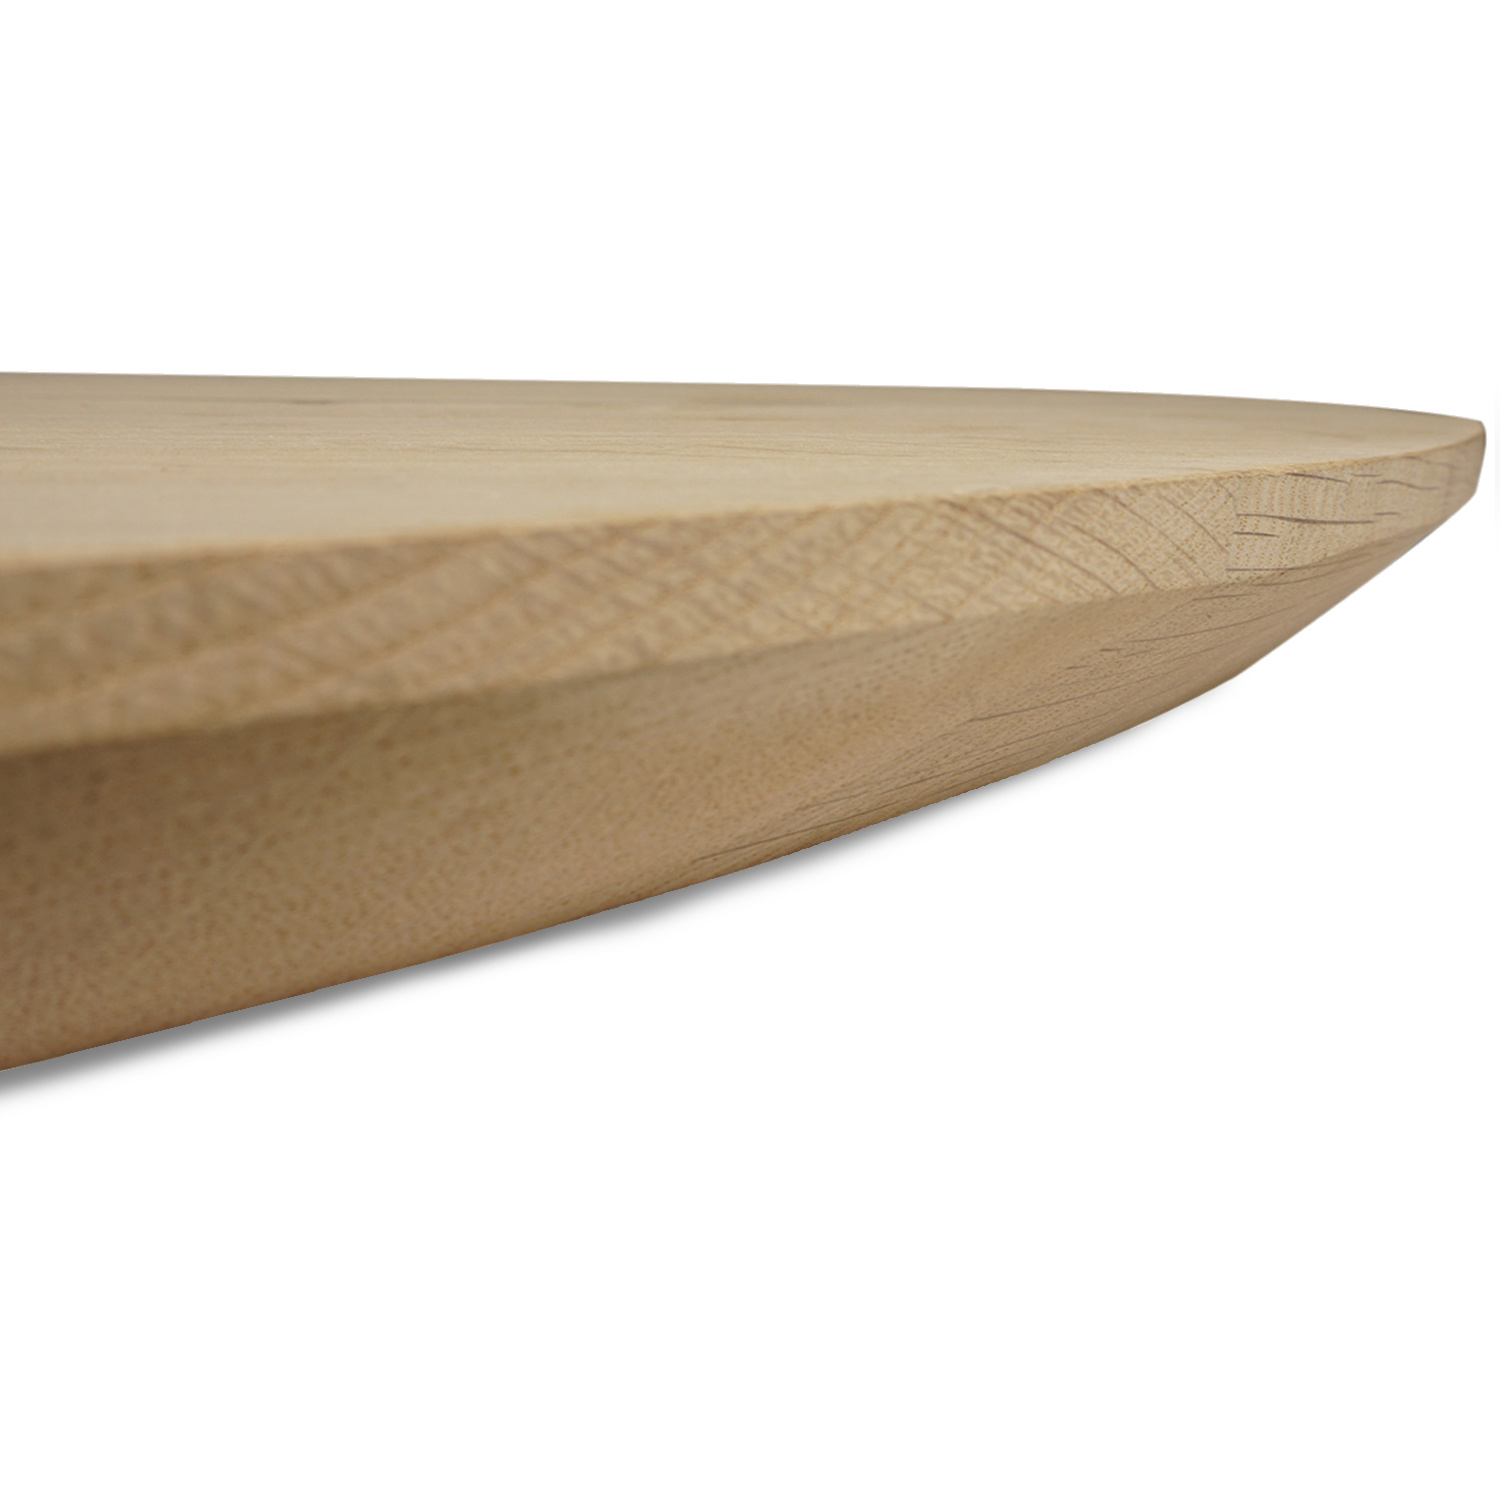  Deens ovaal eiken tafelblad - 2,7 cm dik (1-laag) - Diverse afmetingen - rustiek Europees eikenhout - met brede lamellen (circa 10-12 cm) - verlijmd kd 8-12%